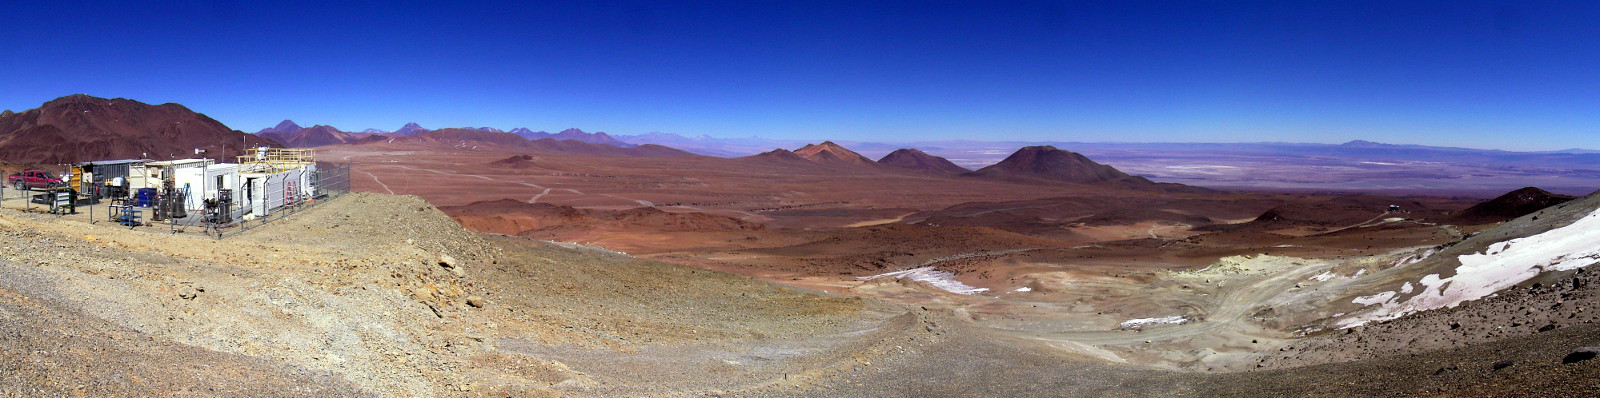 Cerro Toco site, Chilean Andes